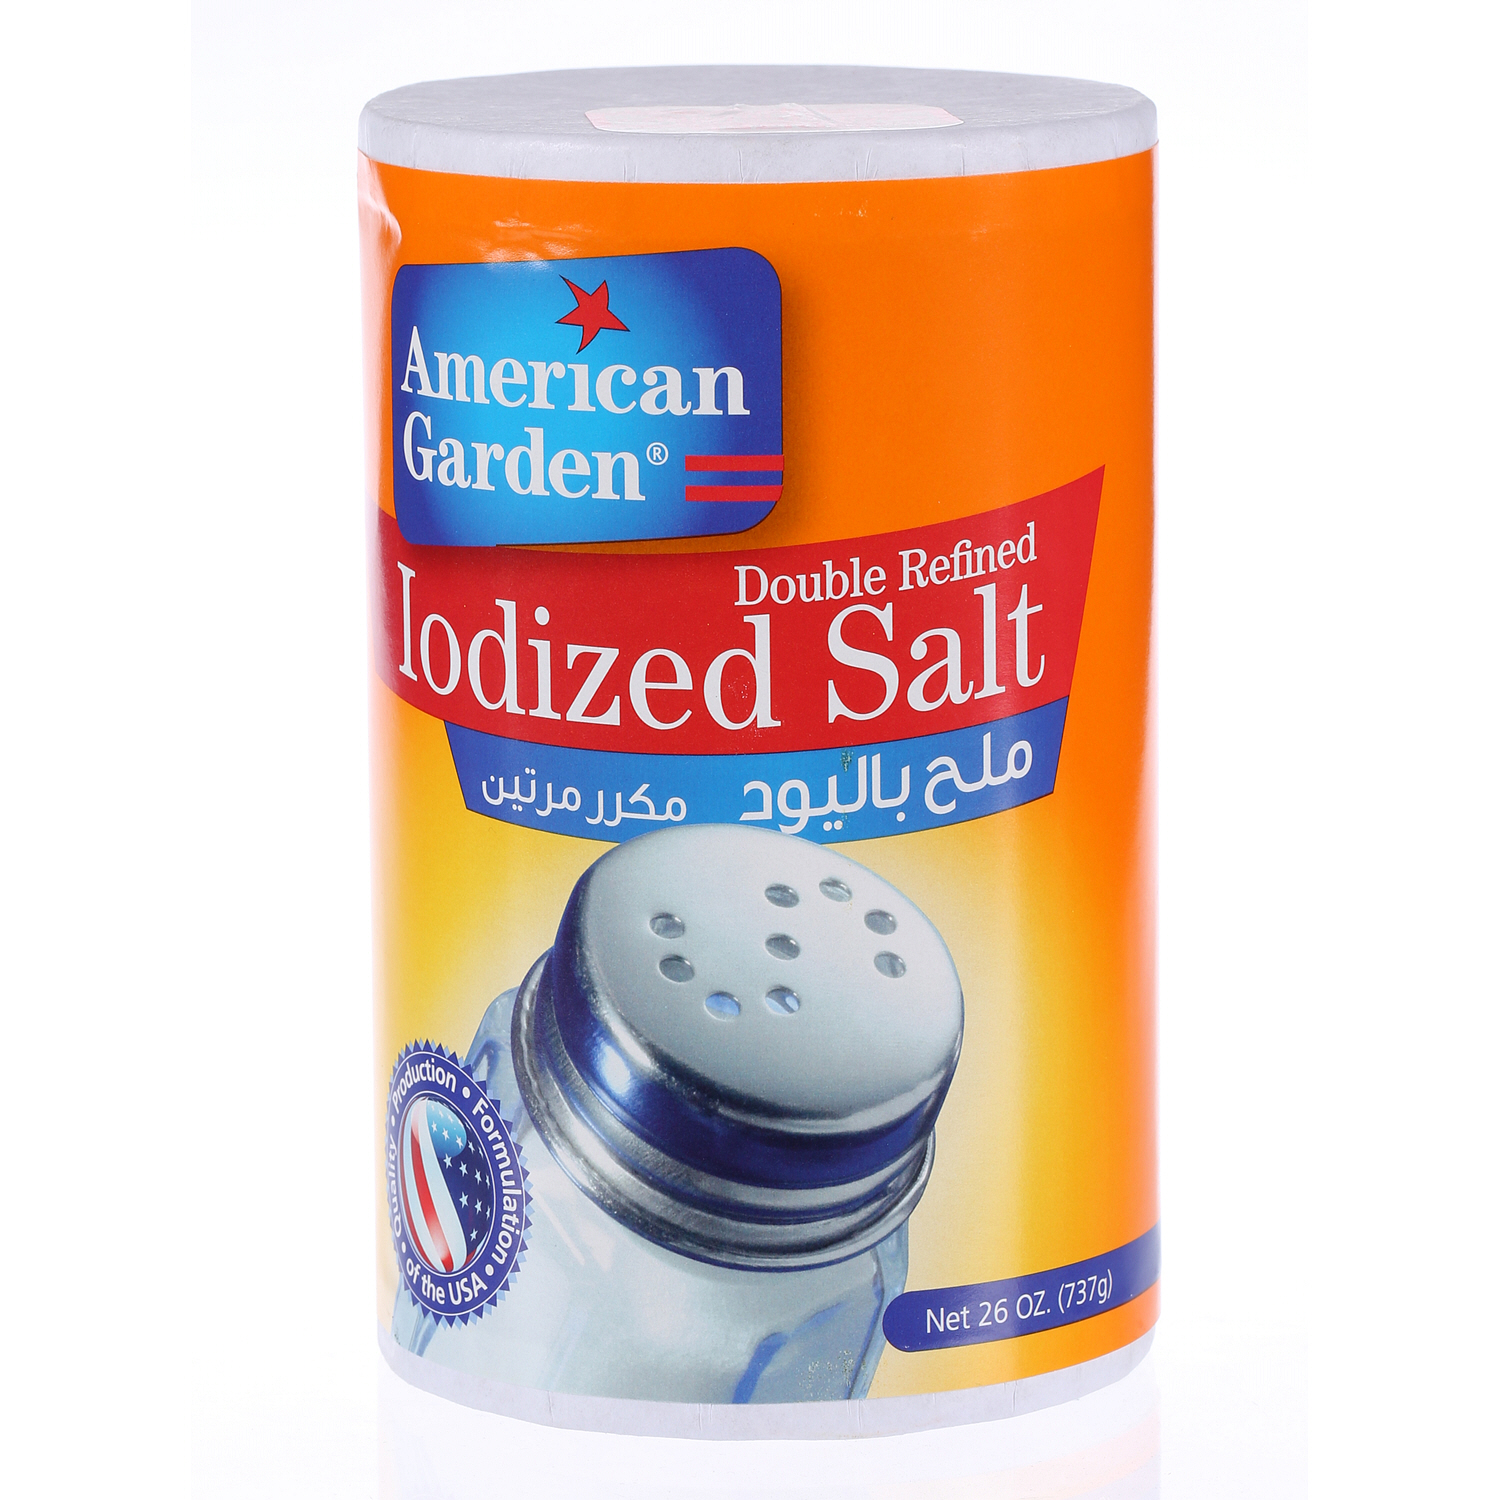 American Garden Iodized Salt 26 Oz